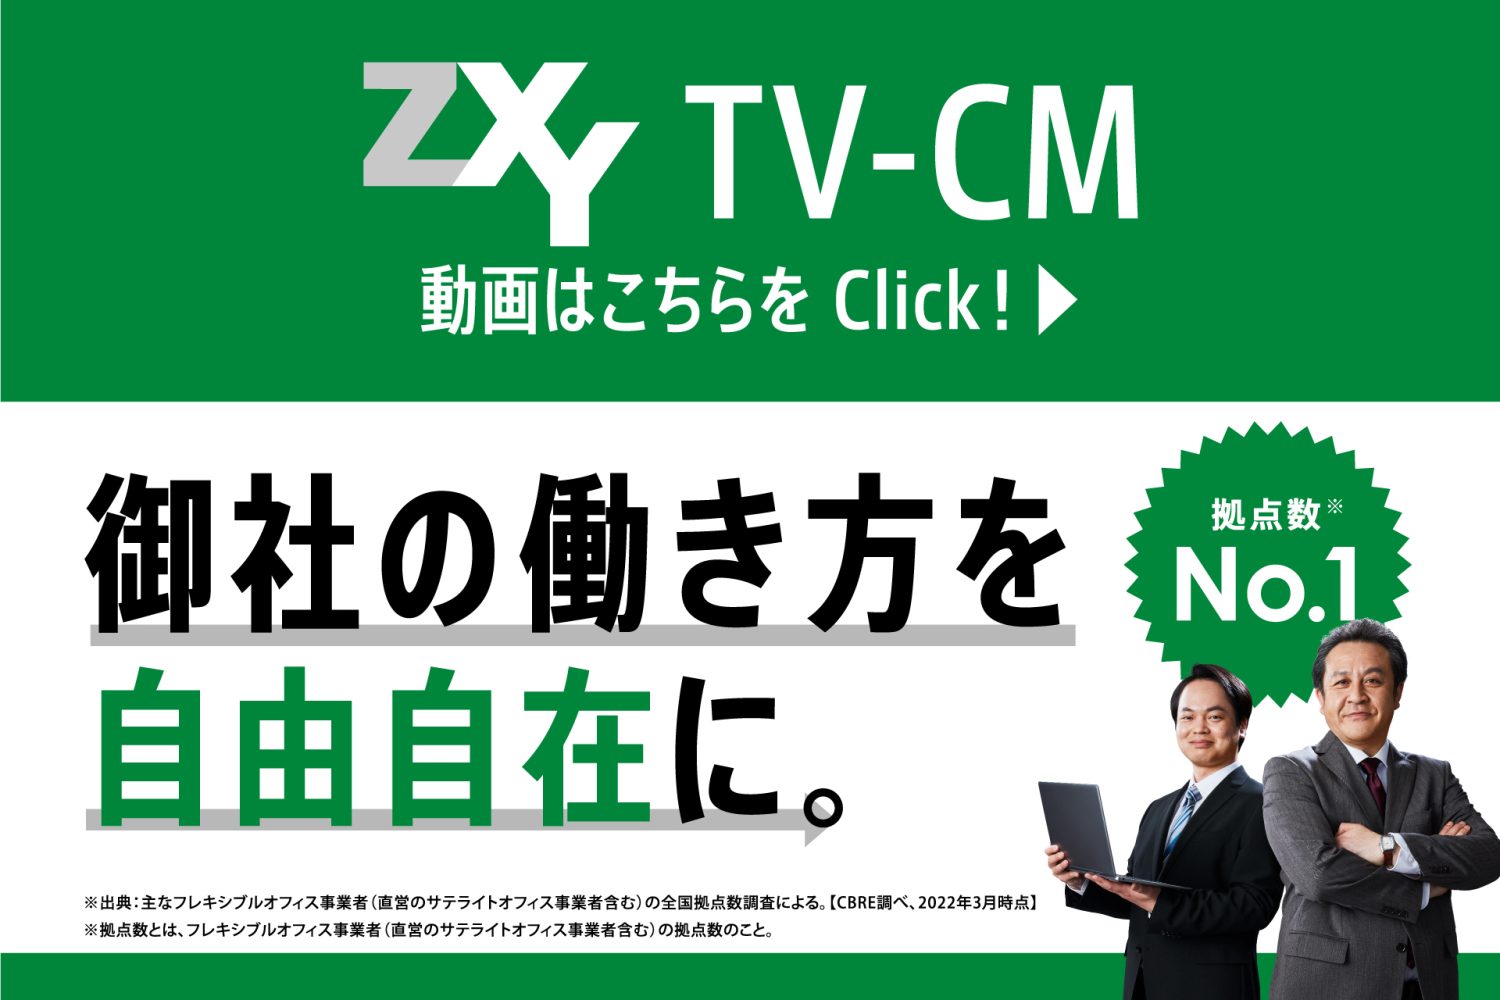 ZXY（ジザイ）TVCM